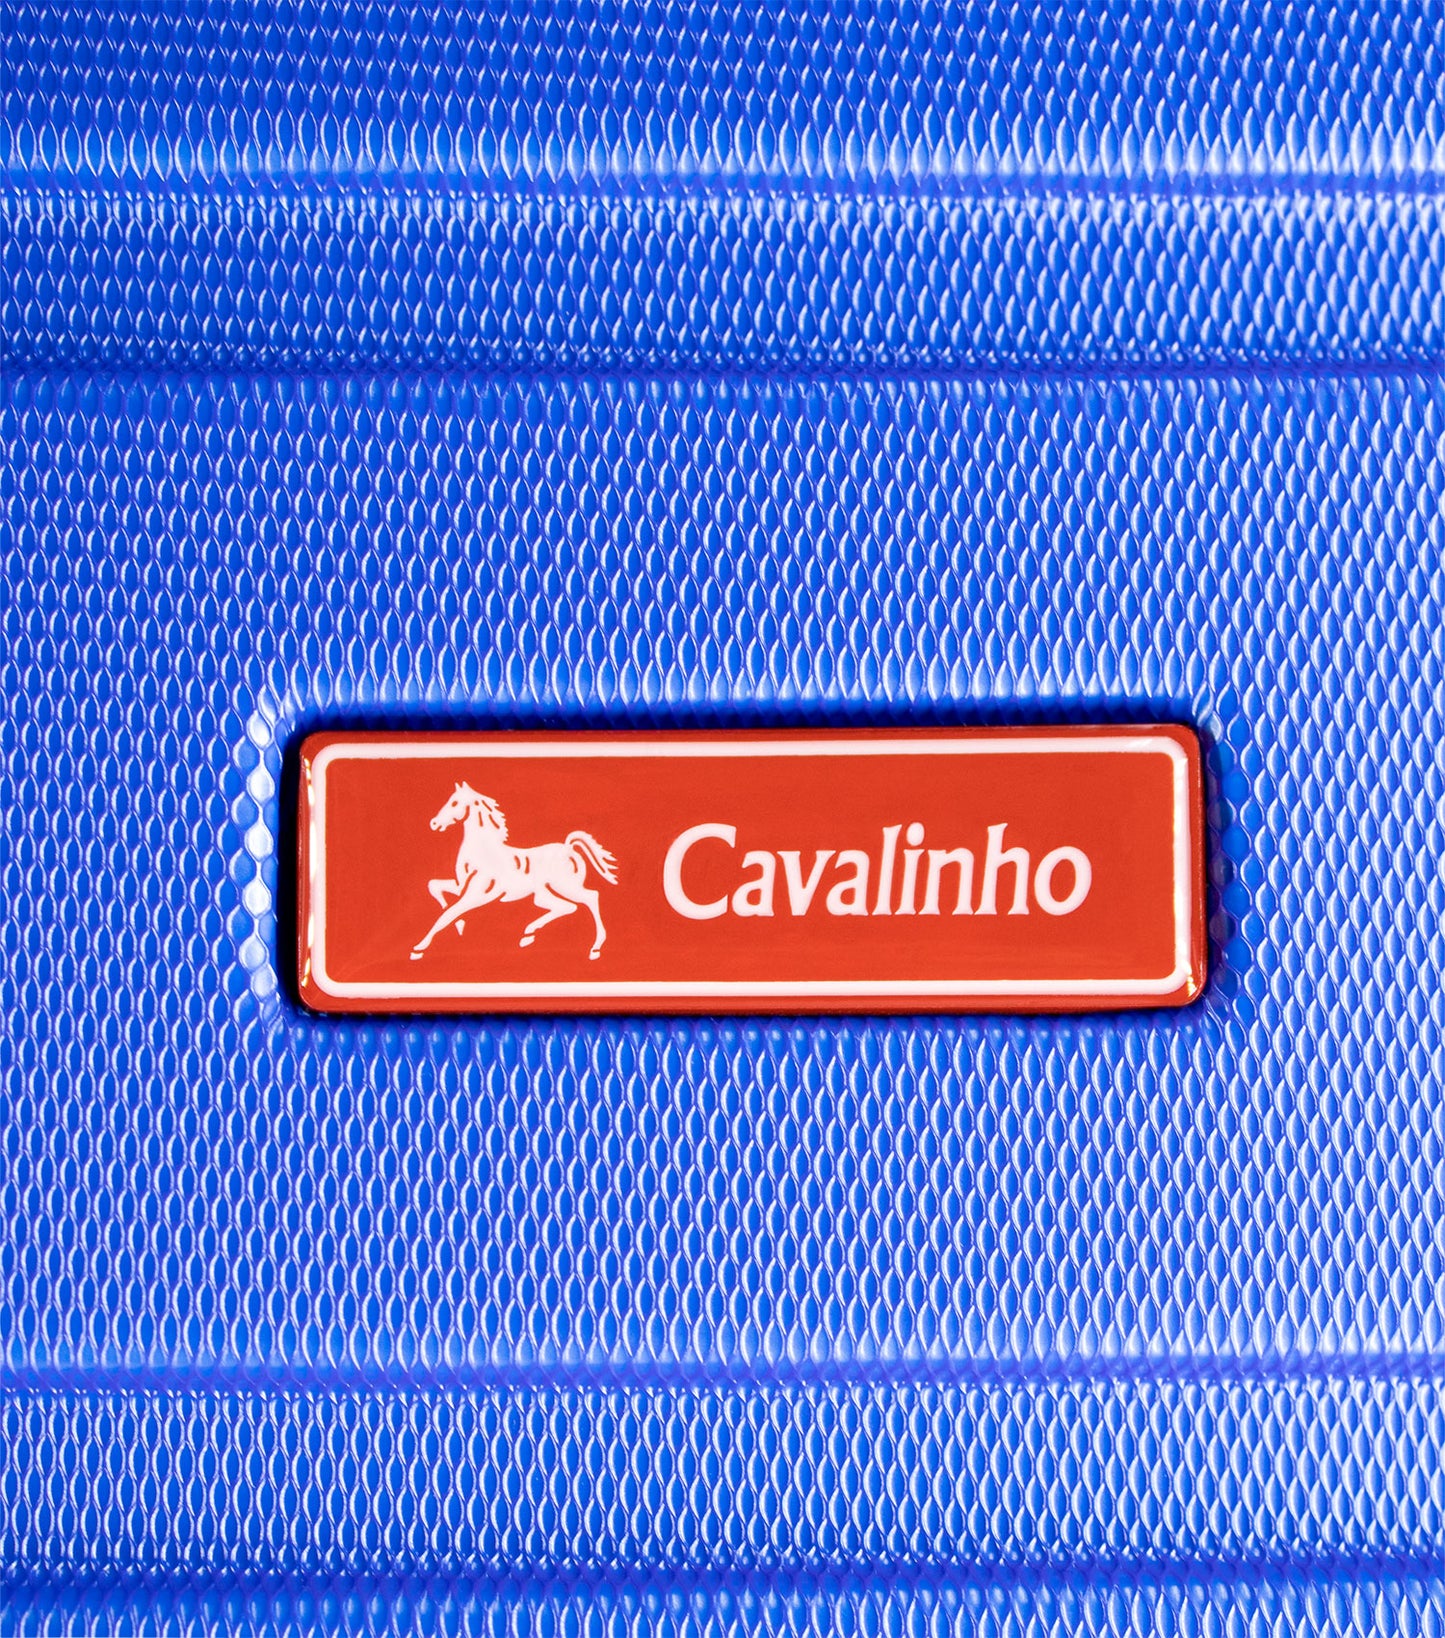 Cavalinho Bon Voyage Carry-on Hardside Luggage (19") - 19 inch Blue - 68020005.03.19_P05